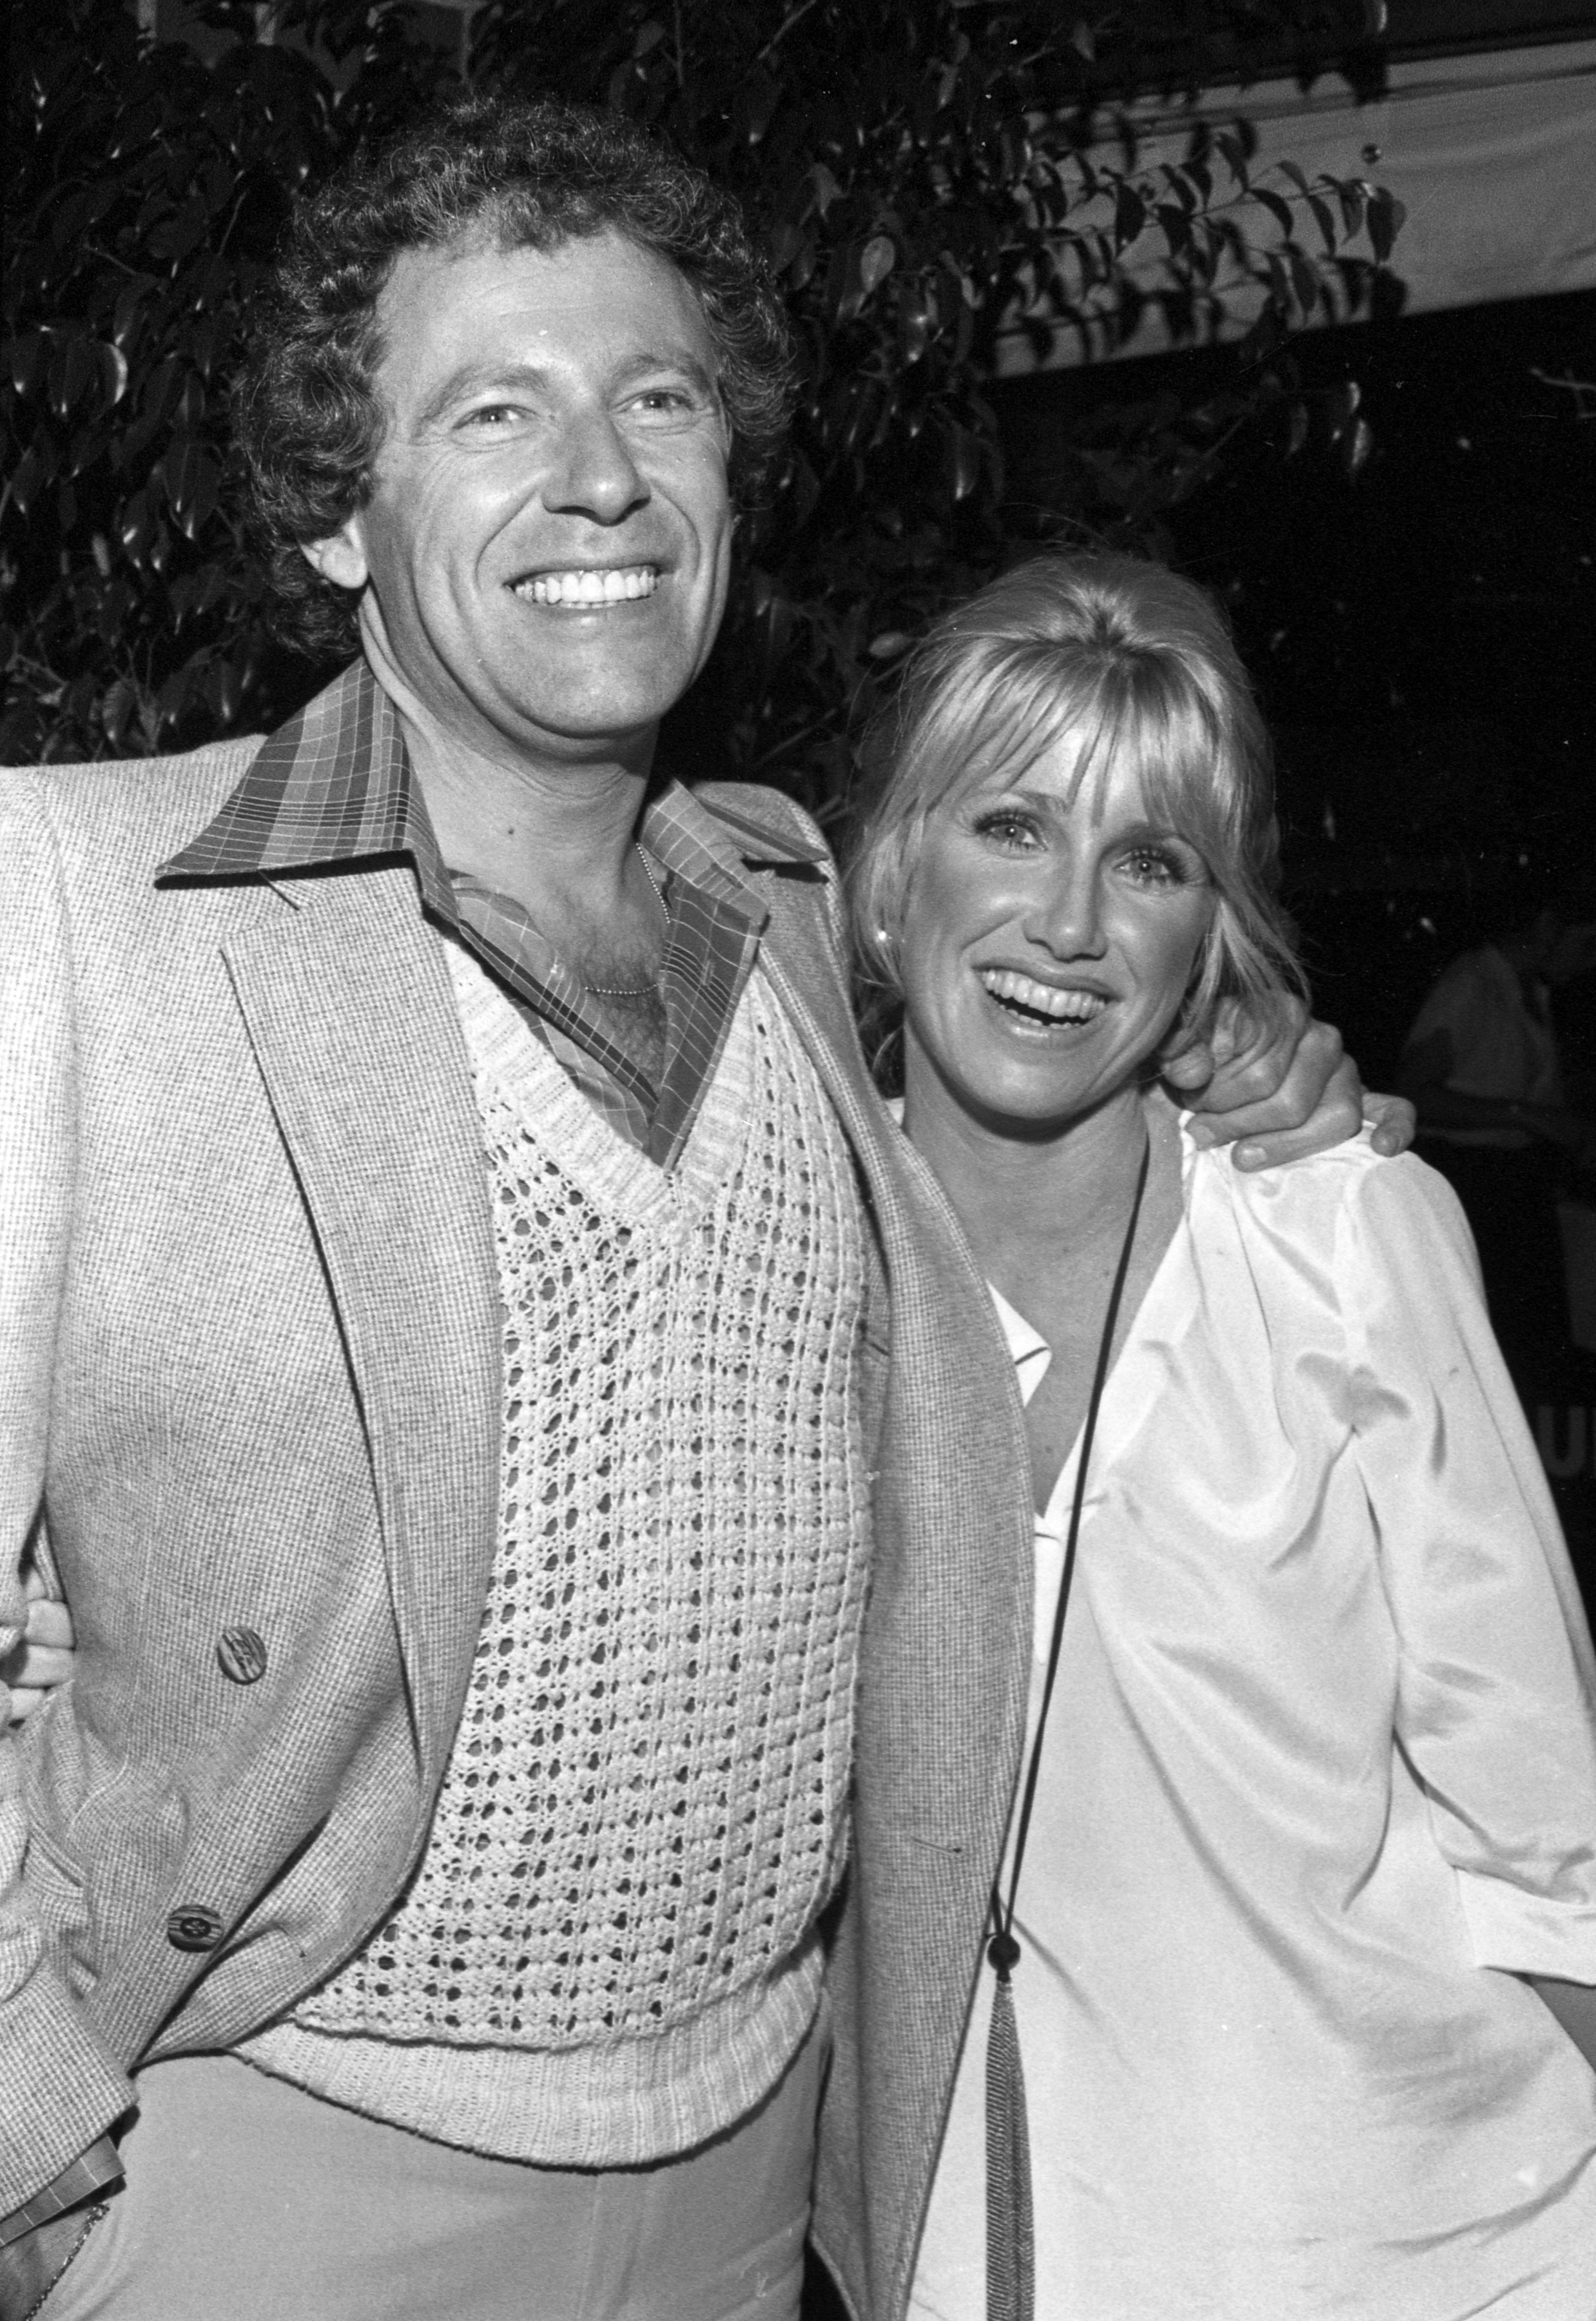 Alan Hamel et Suzanne Somers photographiés ensemble dans les années 1980 | Source : Getty Images